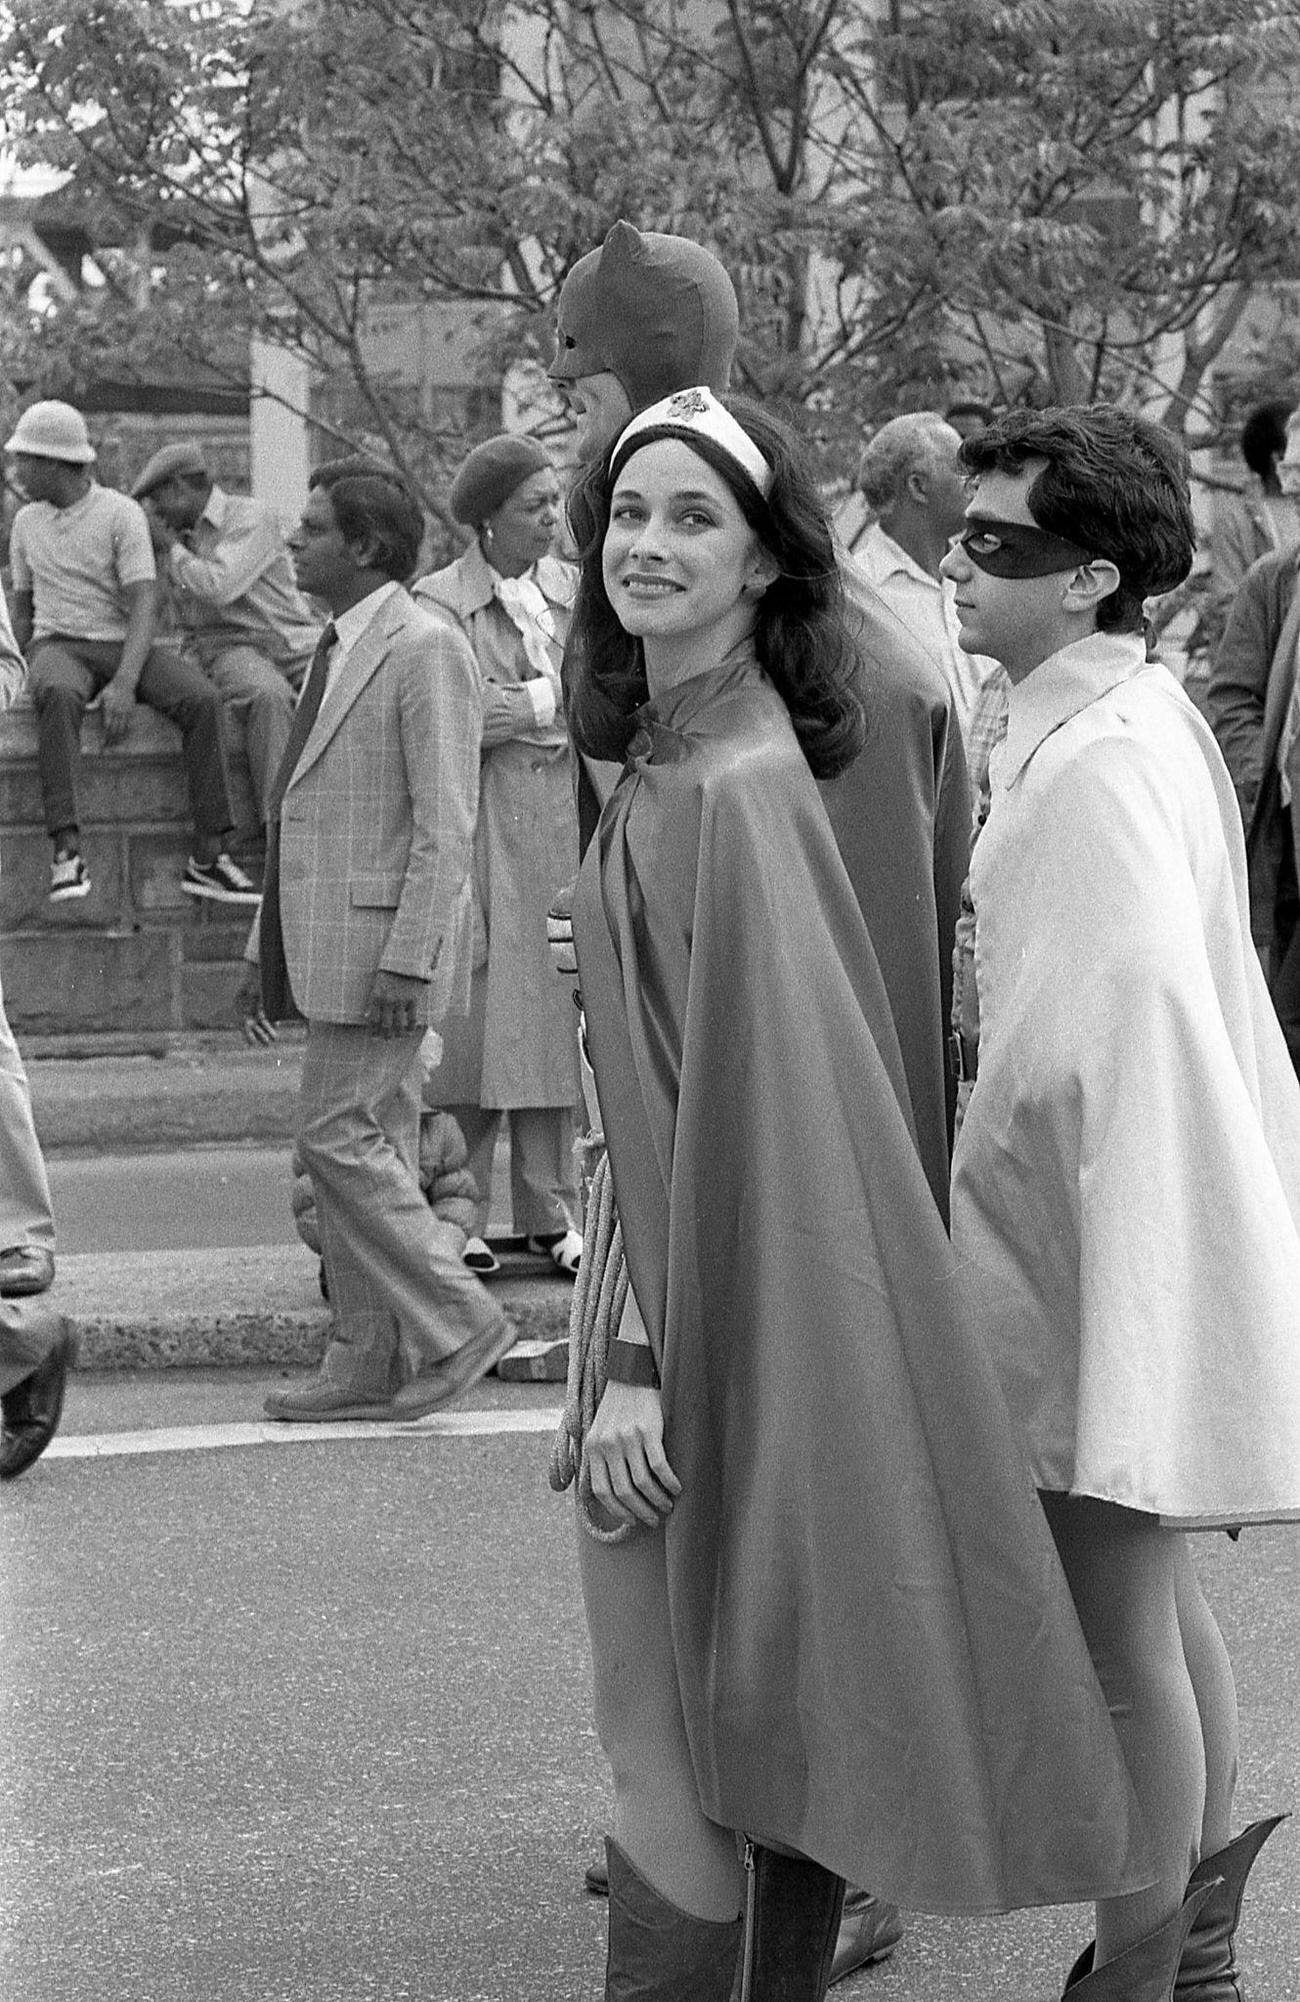 Parade Participants As Wonder Woman, Batman, And Robin, Brooklyn, 1983